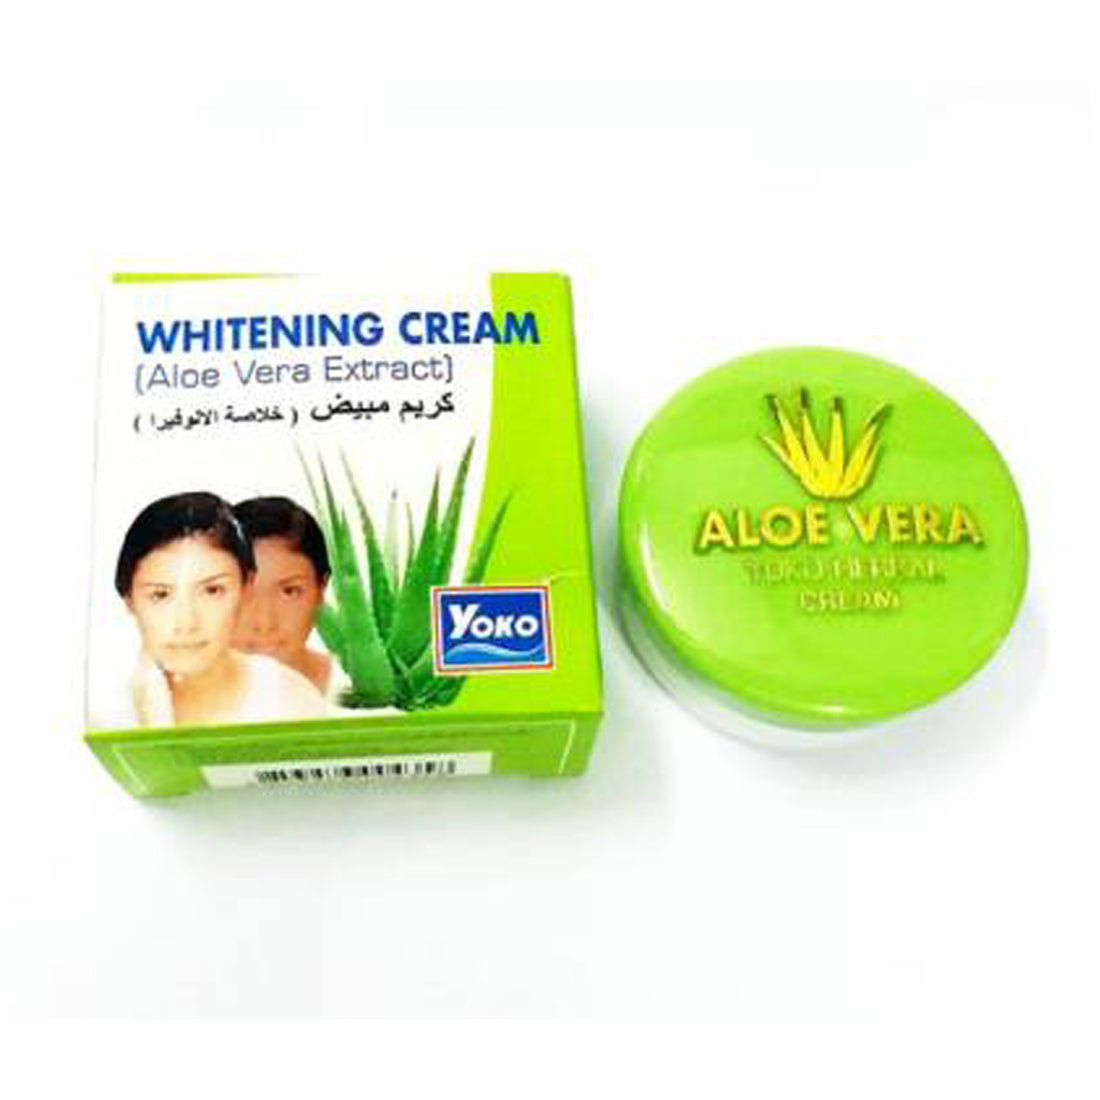 Yoko Aloe-Vera Extract White-ning Cream -4gm